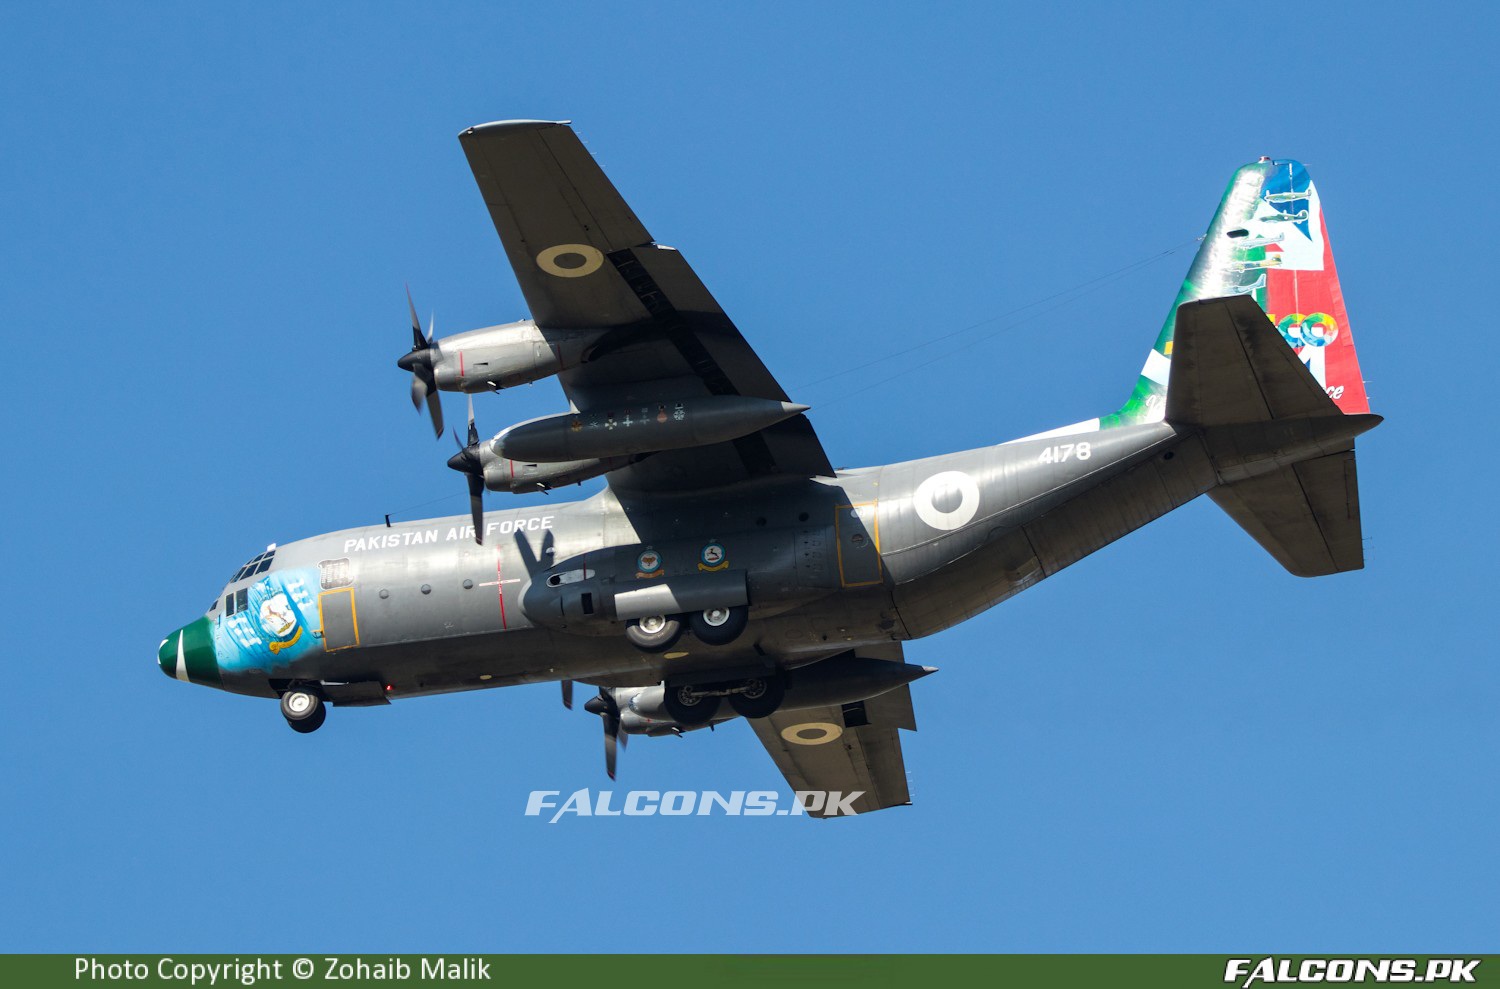 Pakistan Air Force C 130 transport rescue the Pakistan Super League team